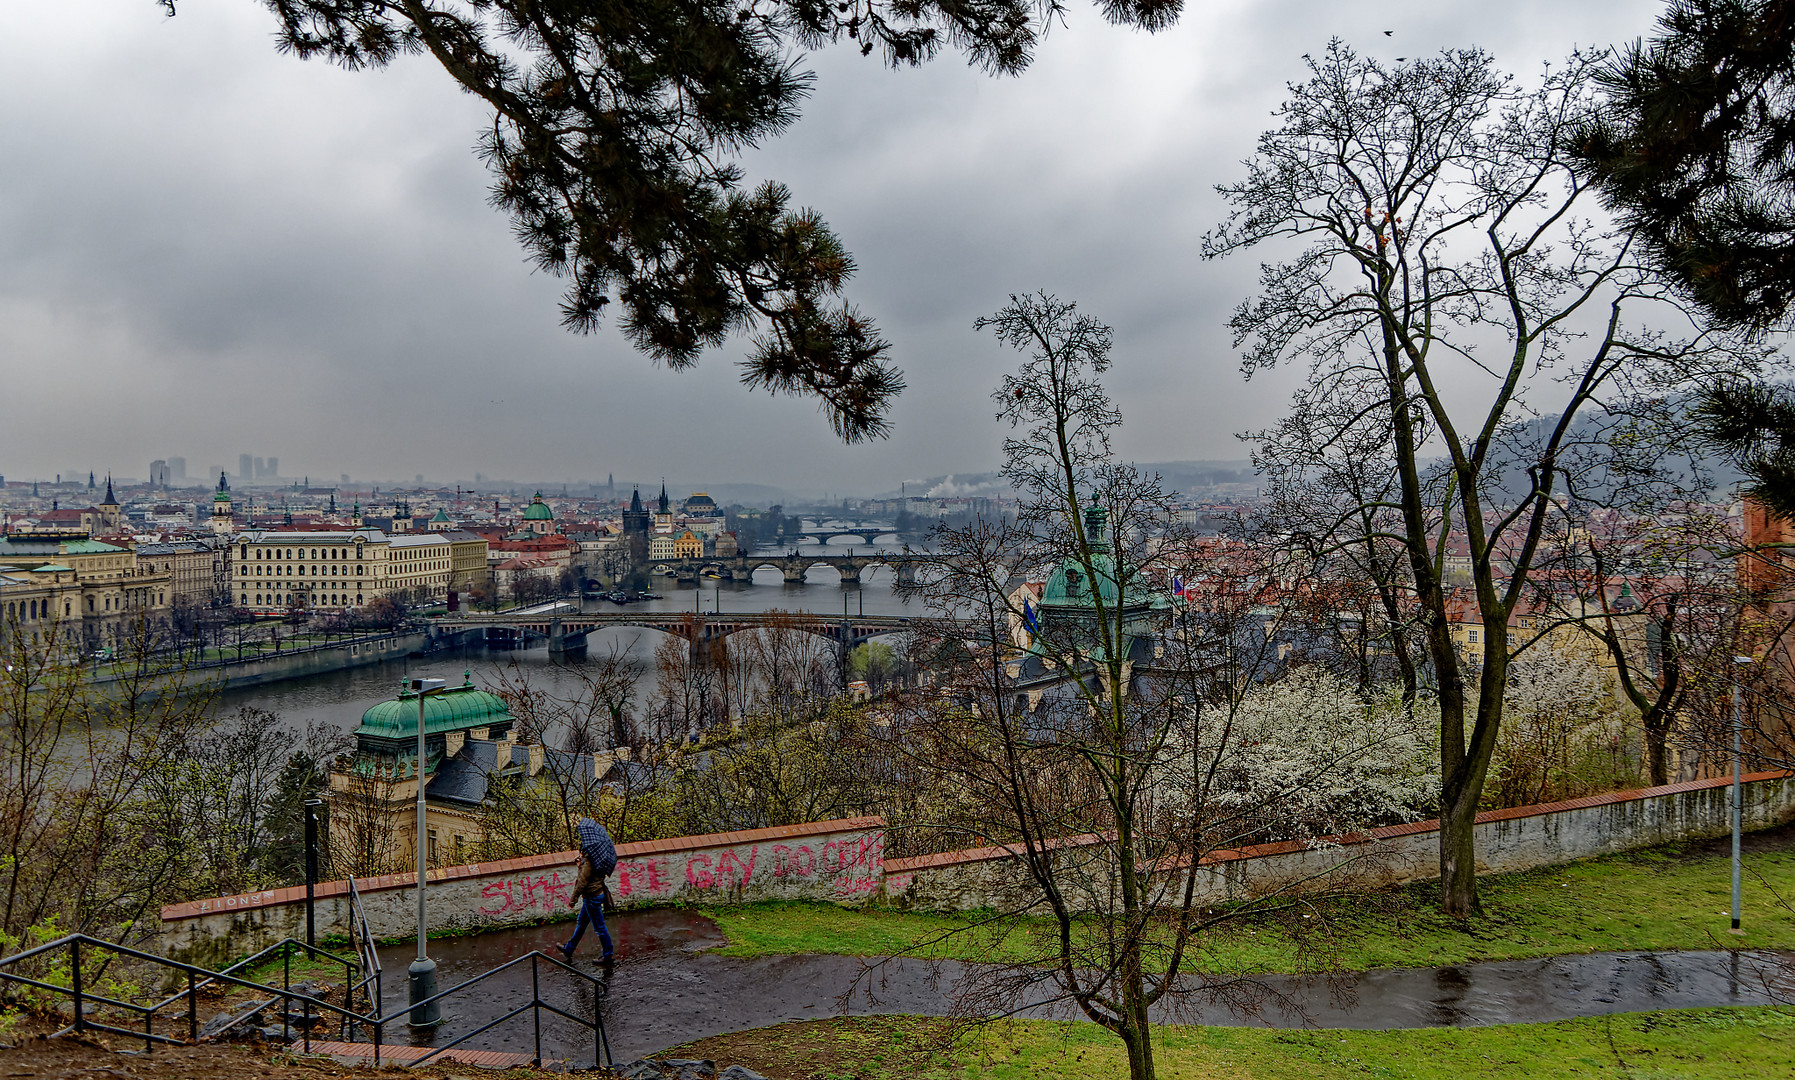 Aprilwetter in Prag (Regen)